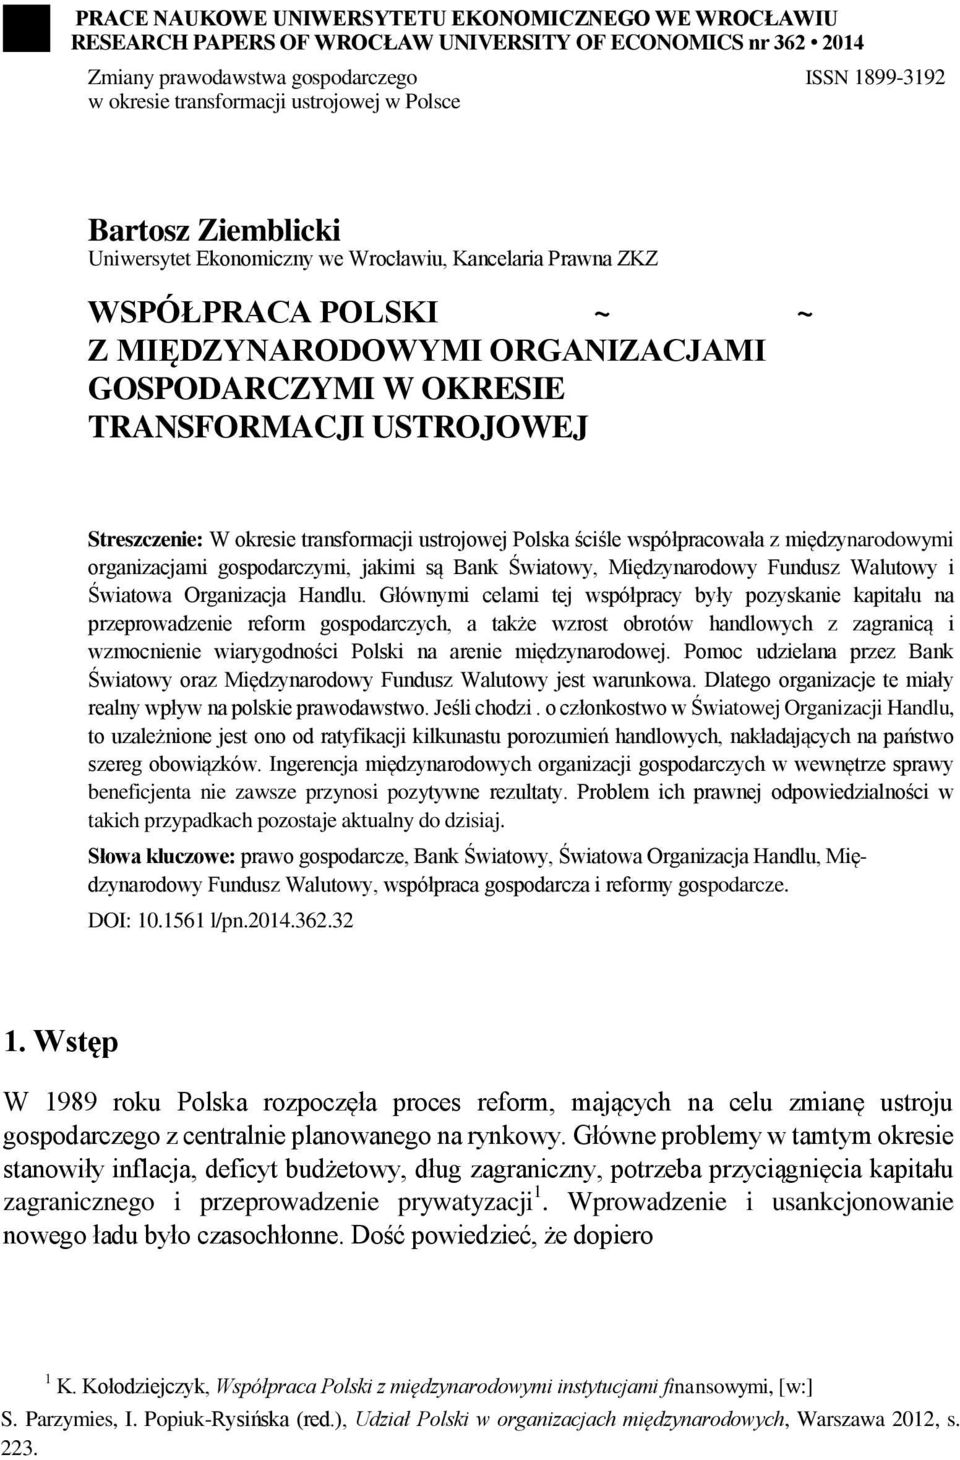 USTROJOWEJ Streszczenie: W okresie transformacji ustrojowej Polska ściśle współpracowała z międzynarodowymi organizacjami gospodarczymi, jakimi są Bank Światowy, Międzynarodowy Fundusz Walutowy i